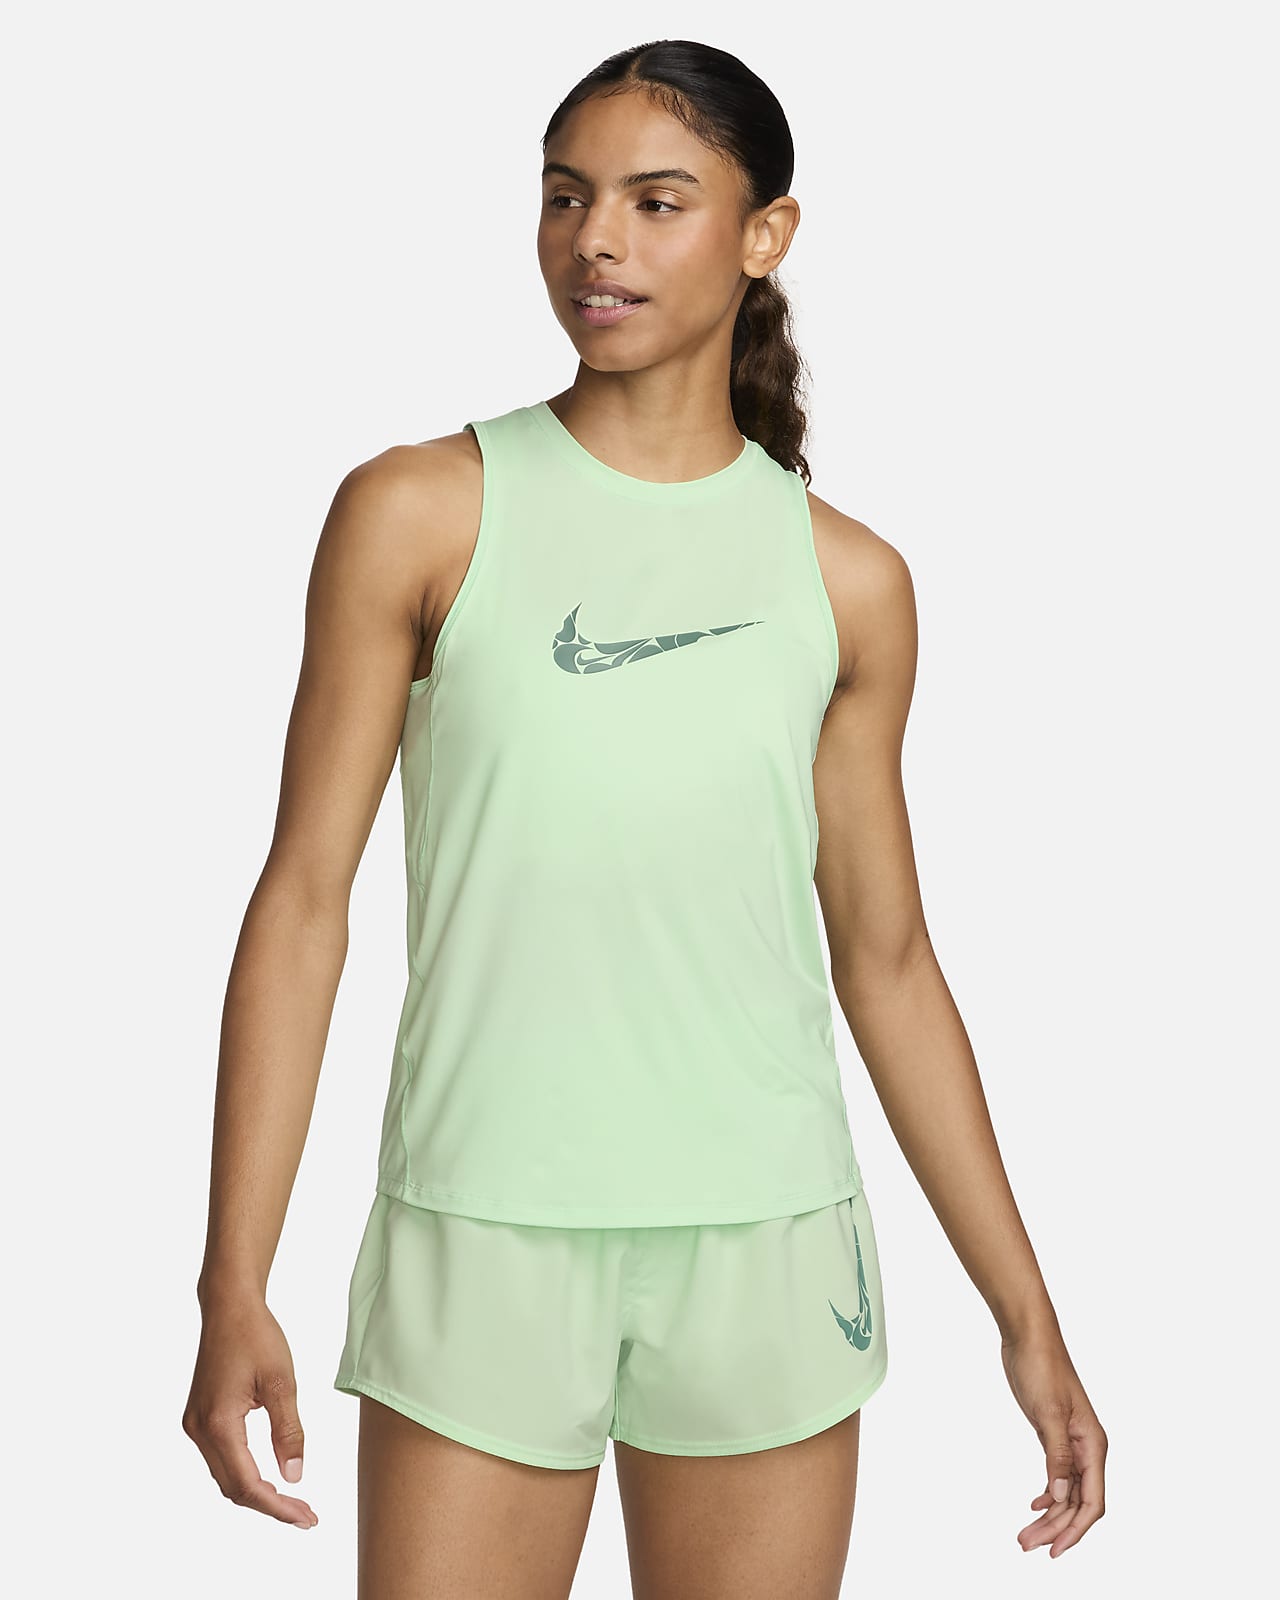 Dámské běžecké tílko Nike One s grafickým motivem